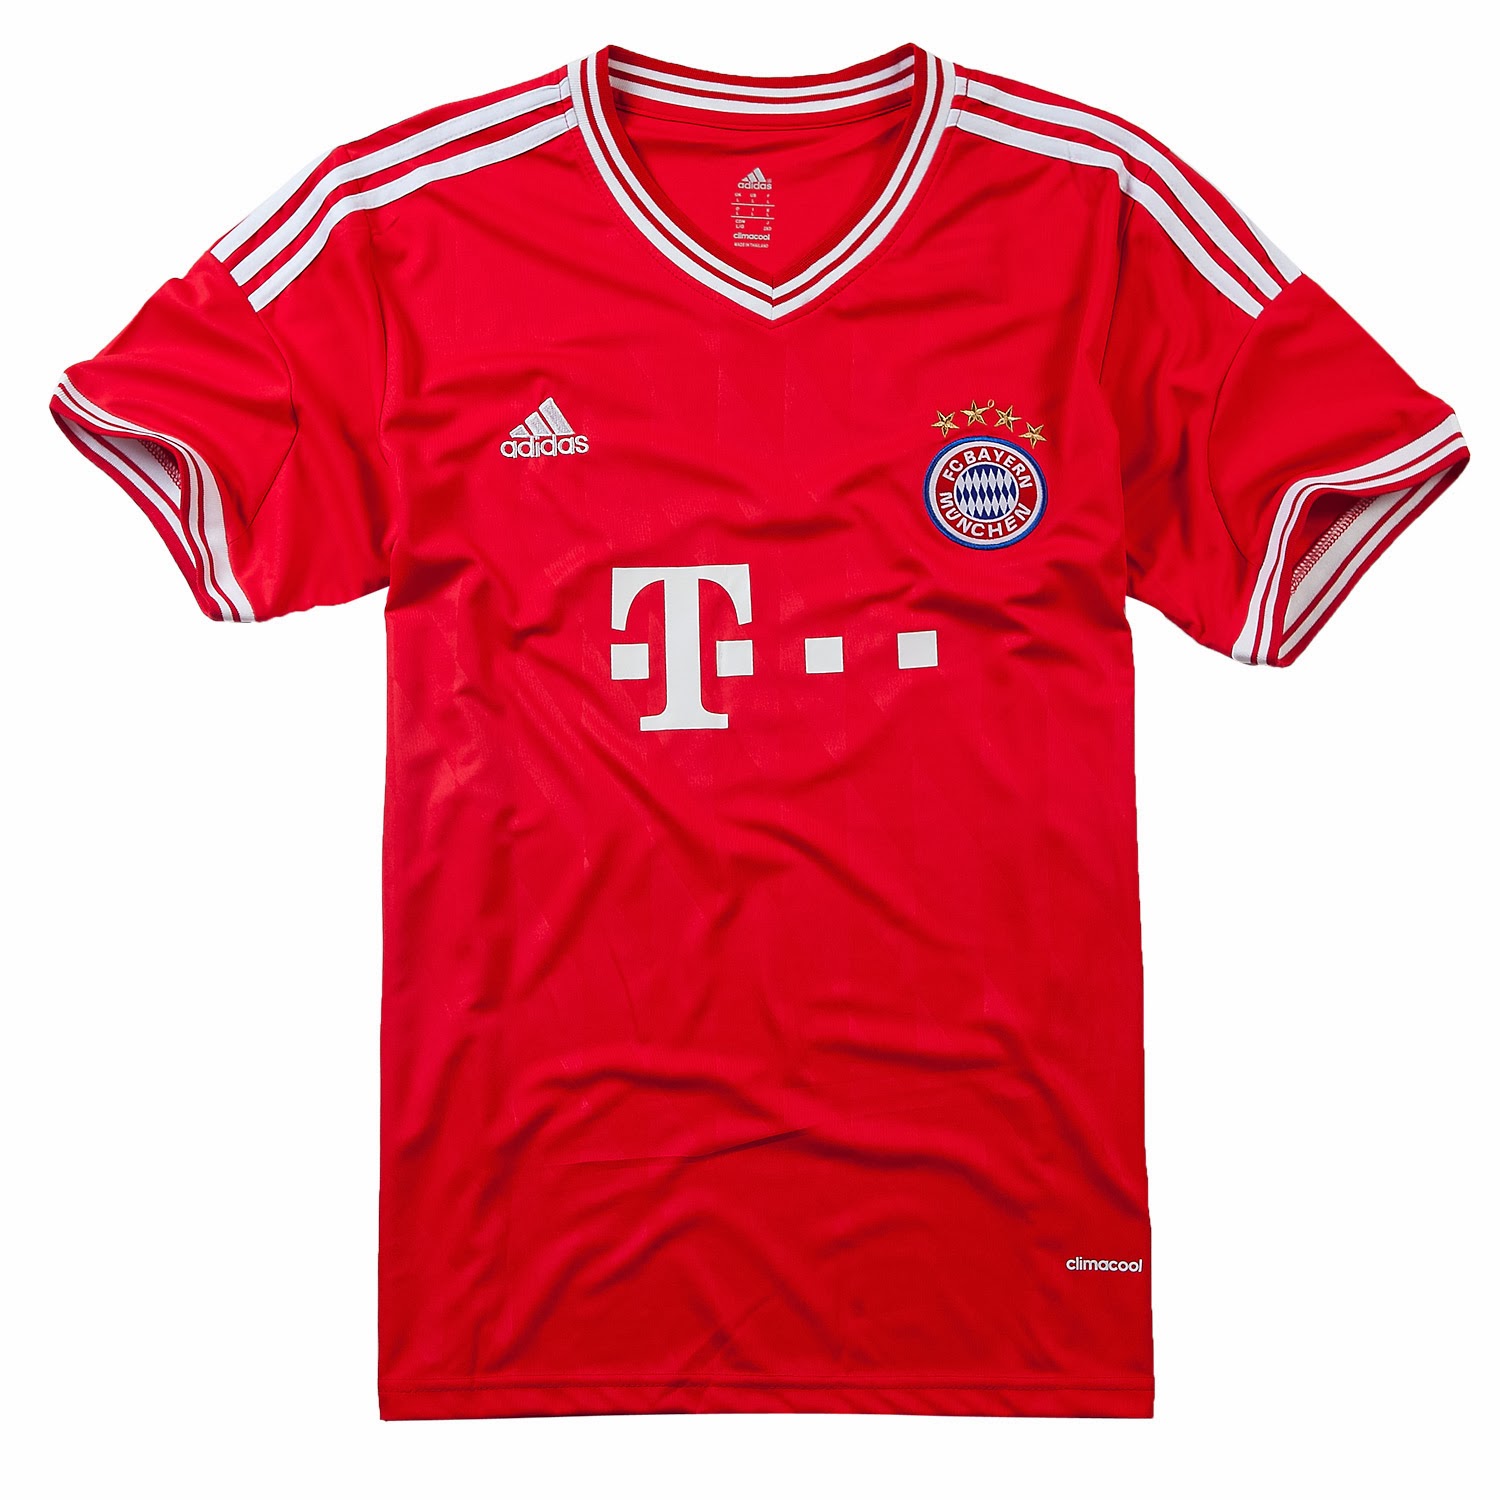 Equipaciones de futbol baratas 2015 online: nueva camisetas de futbol Bayern Munich 2014 baratas